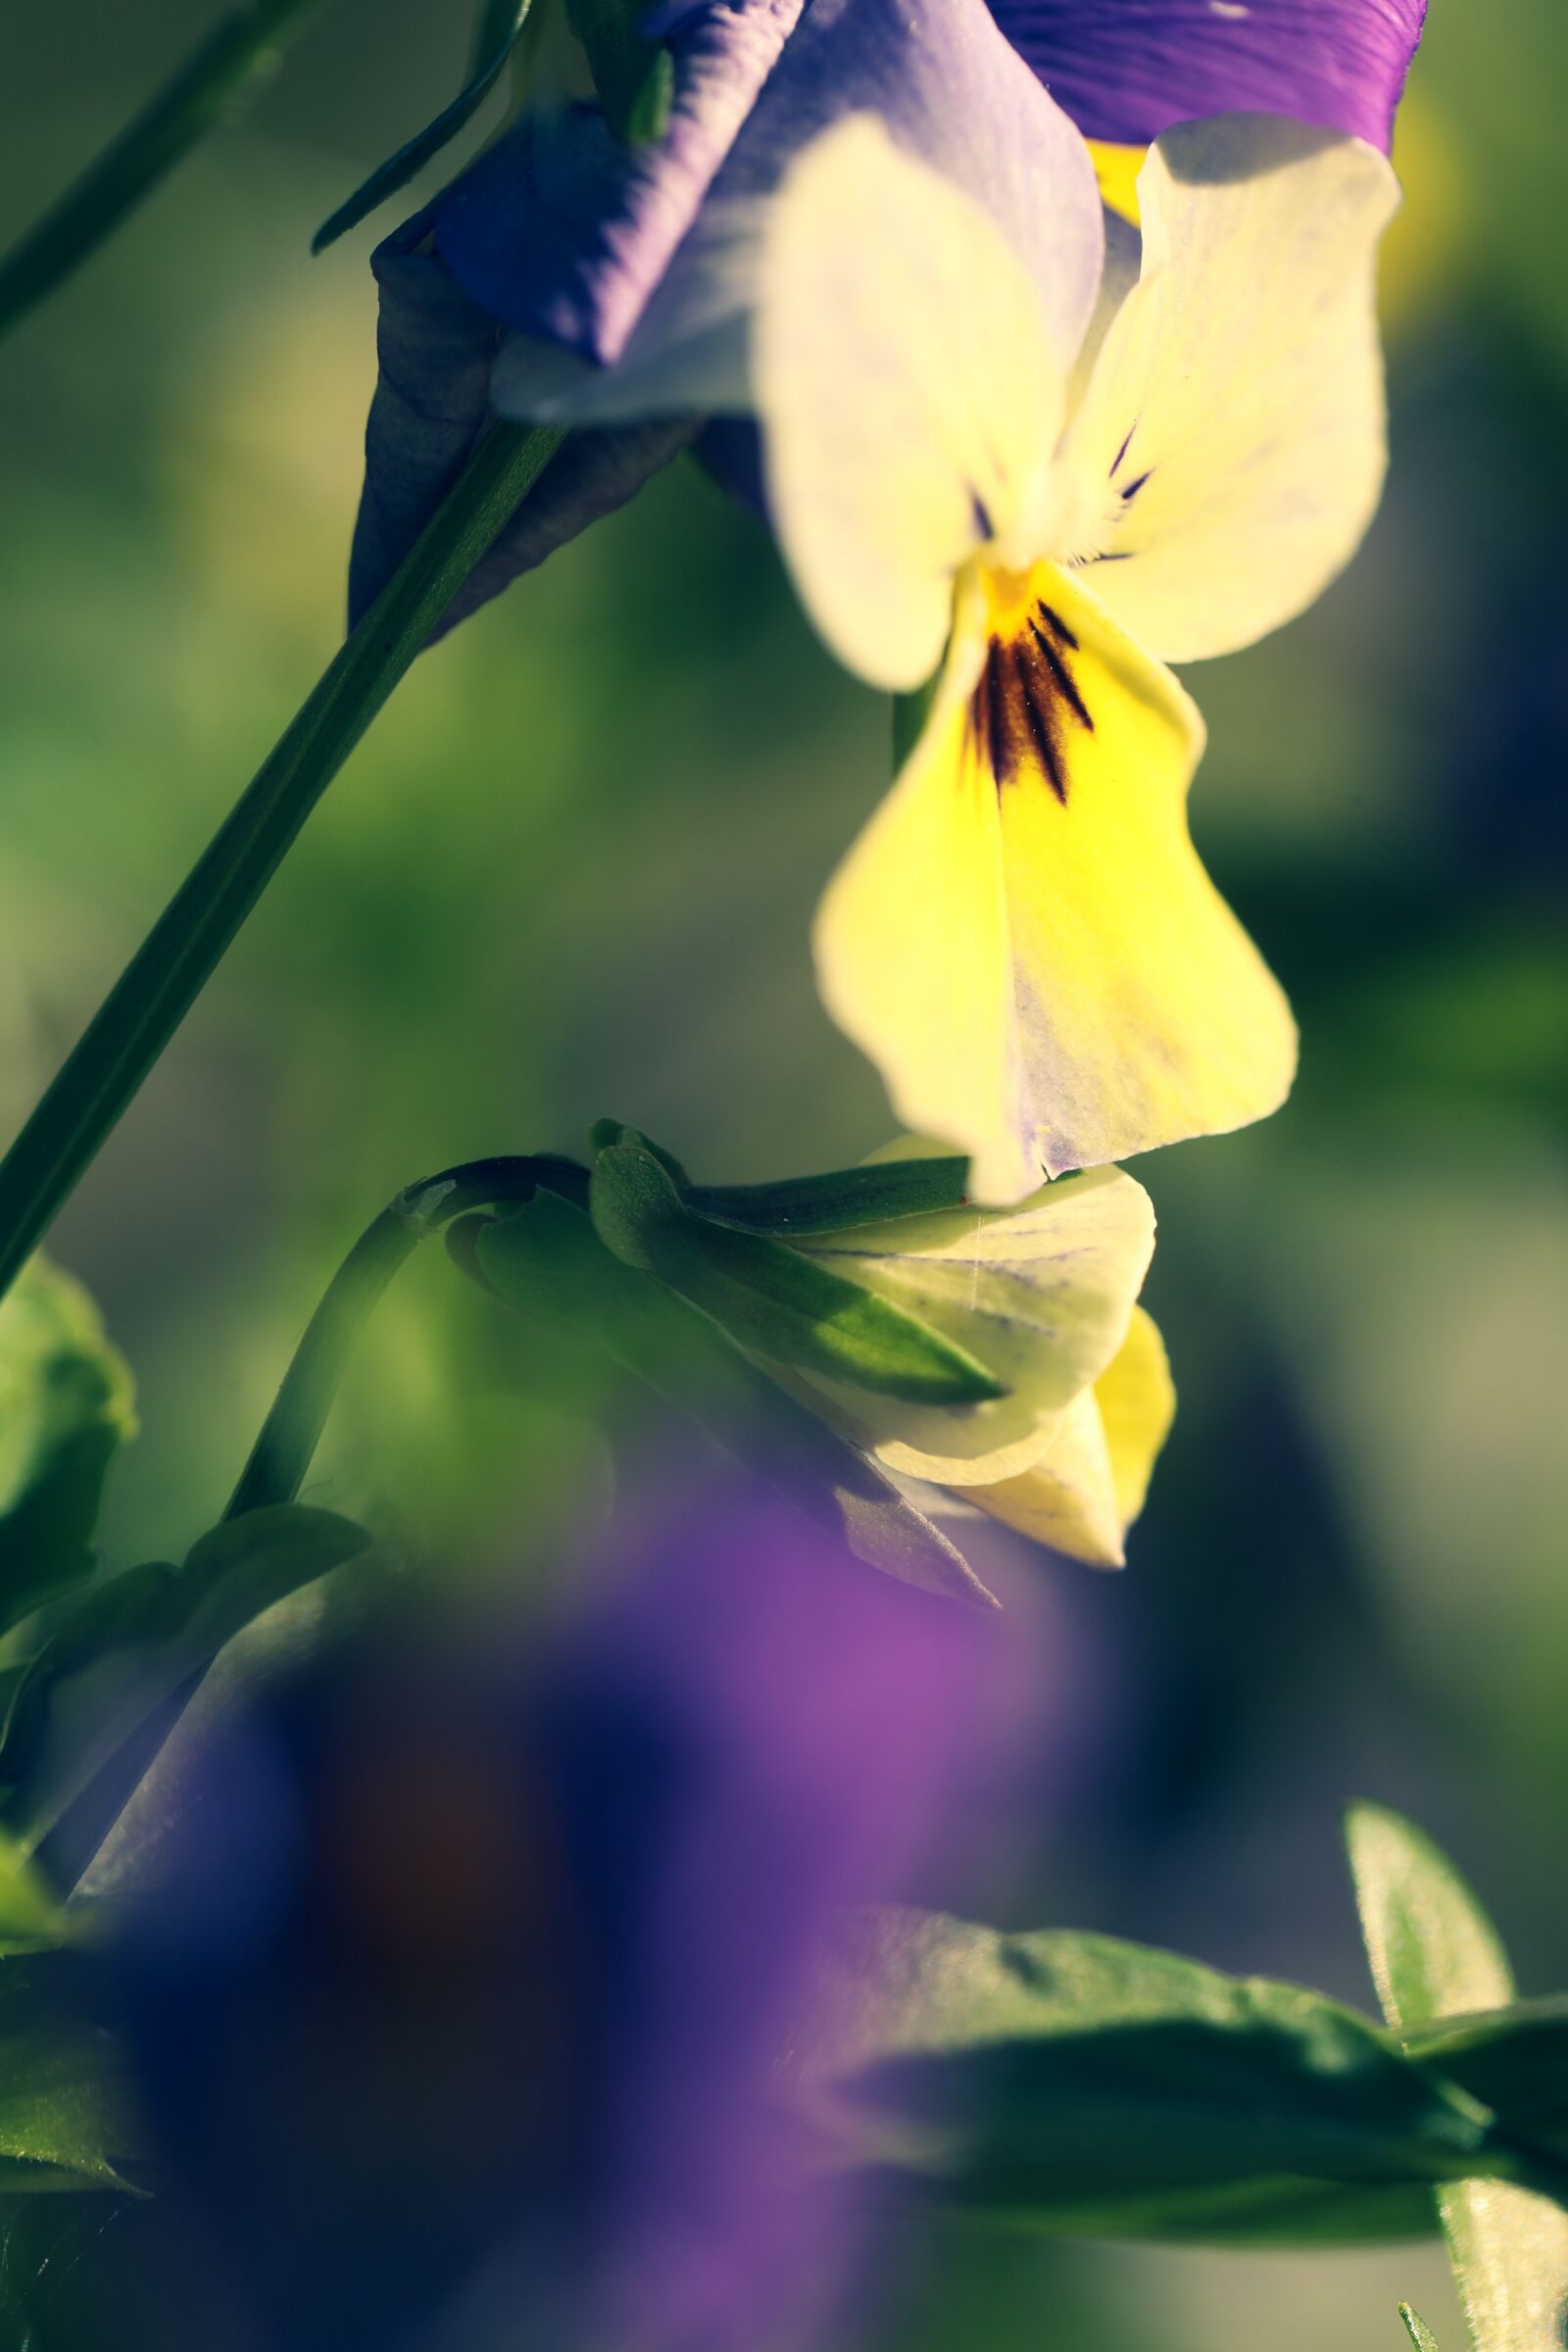 Canon EOS R sample photo. Flower, pansy, garden photography